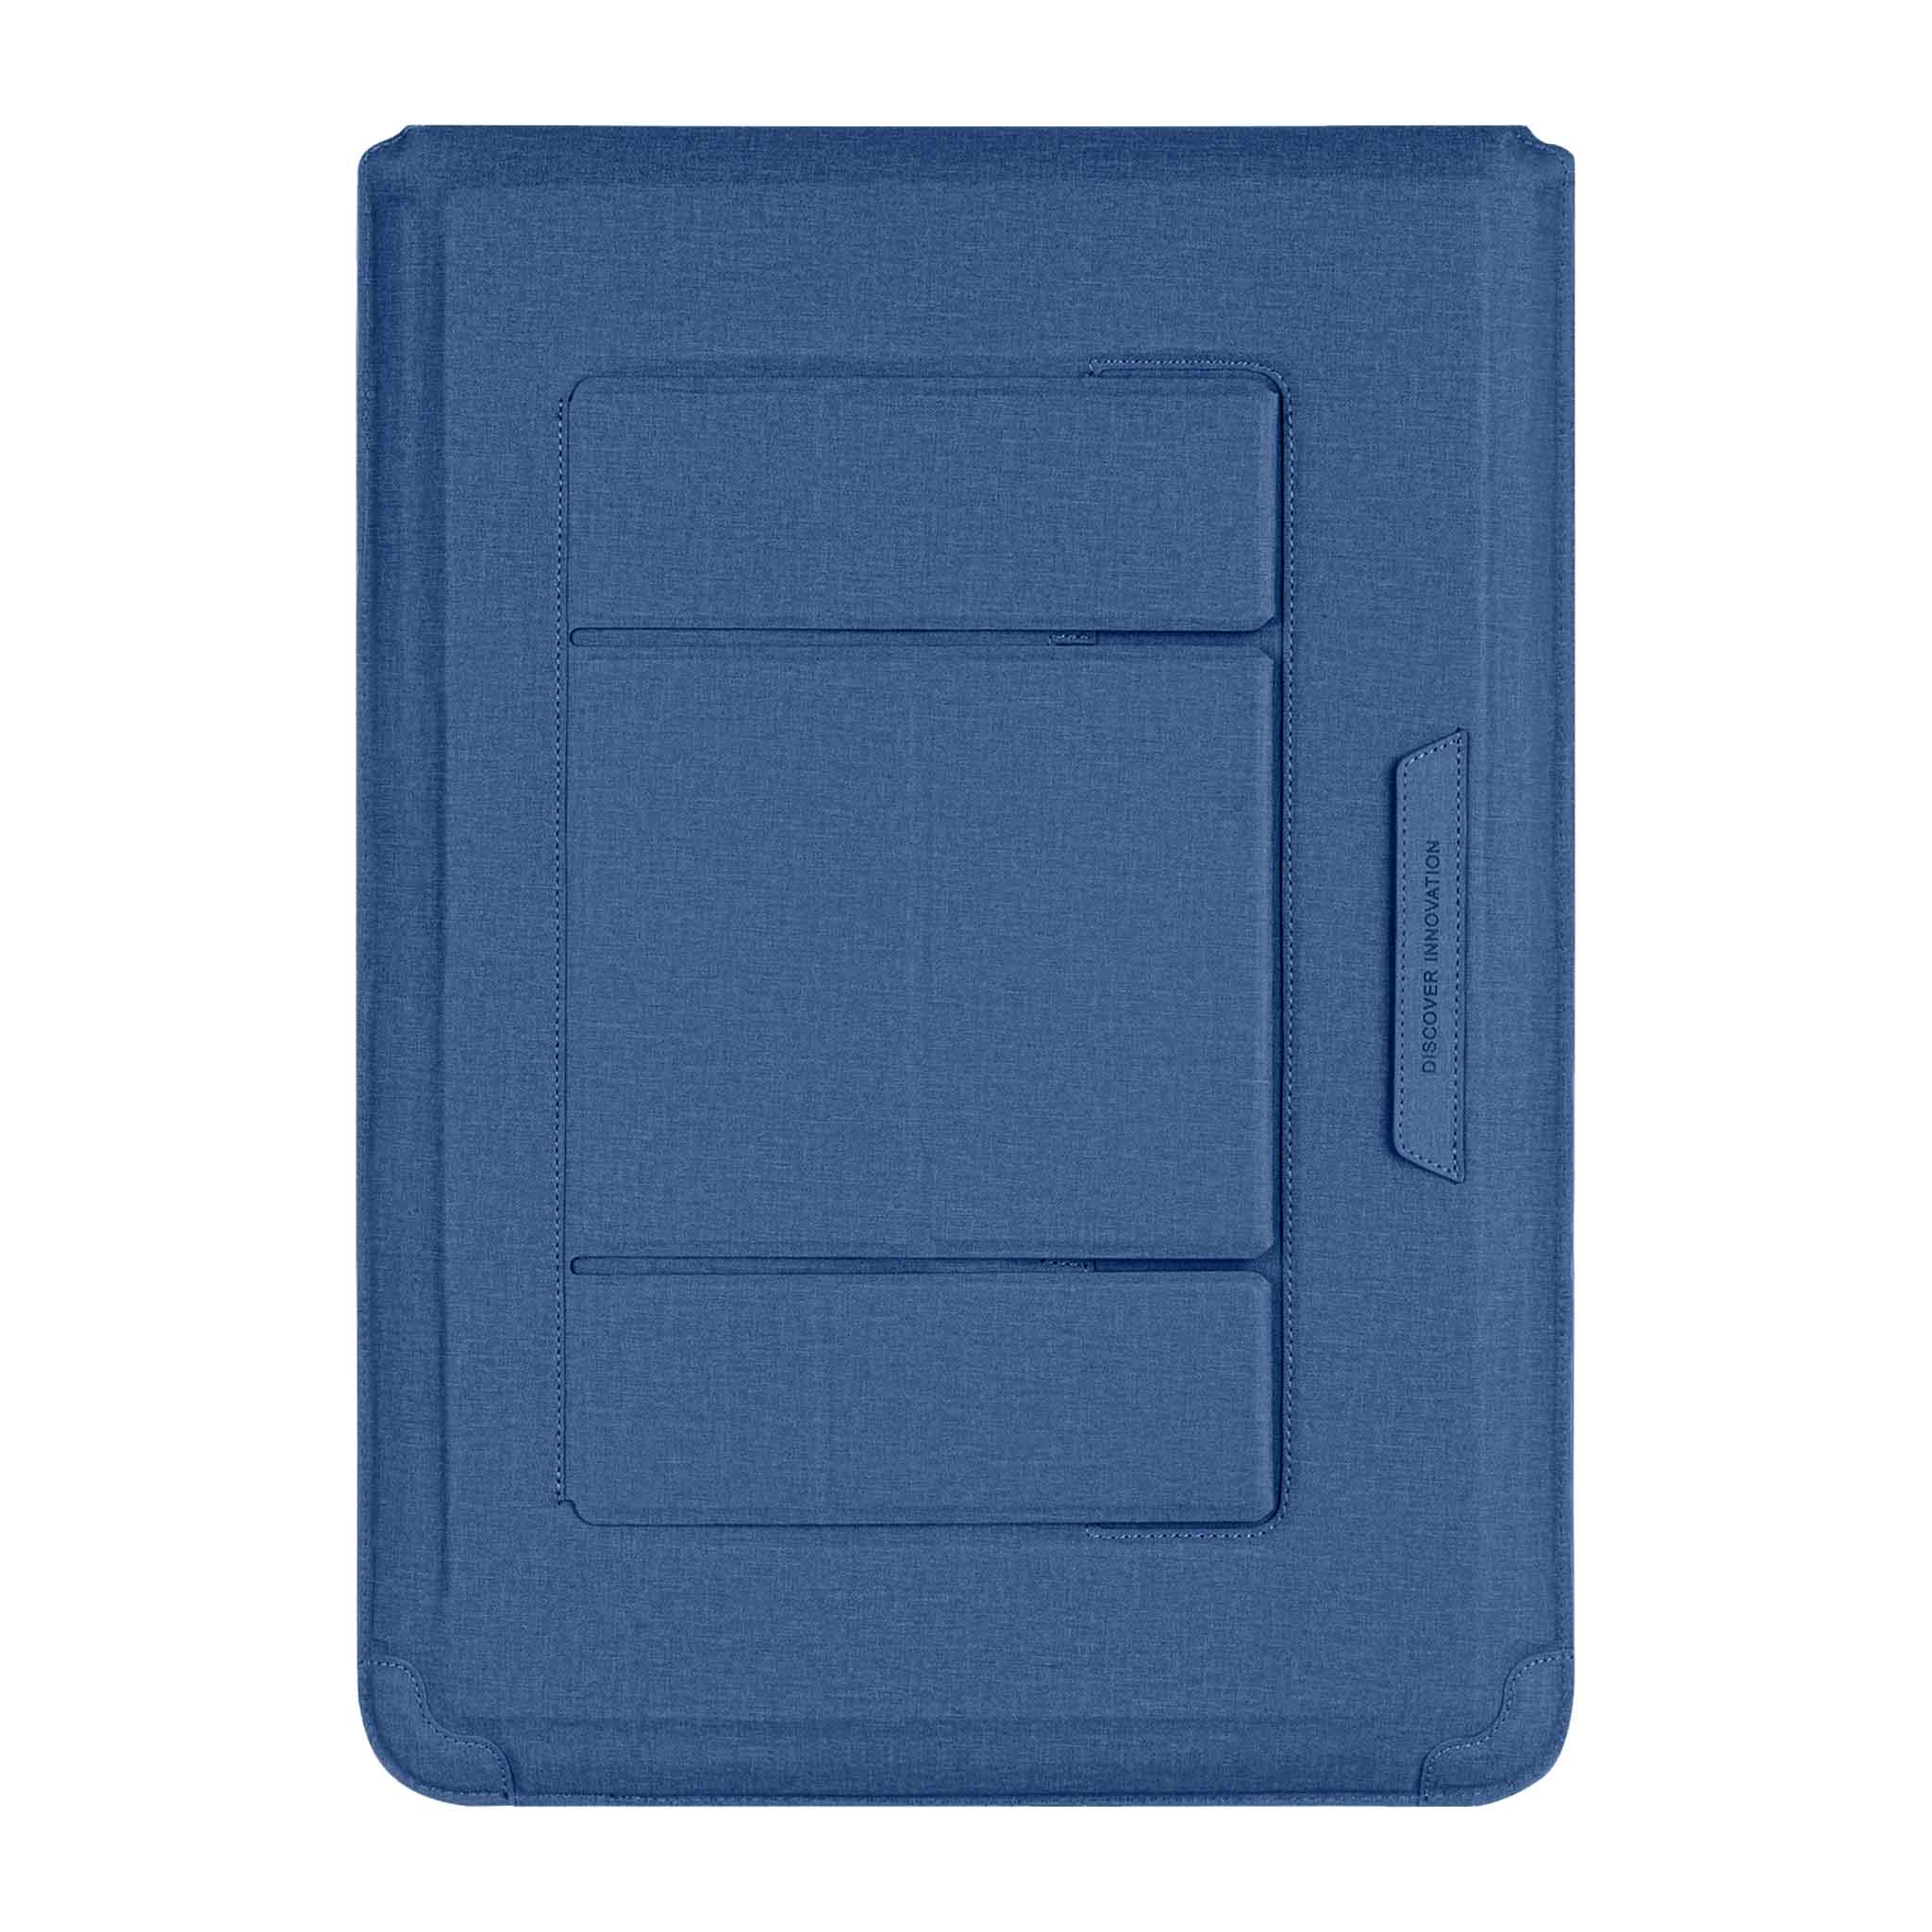 Notebook 16.1 inch / Deep Blue